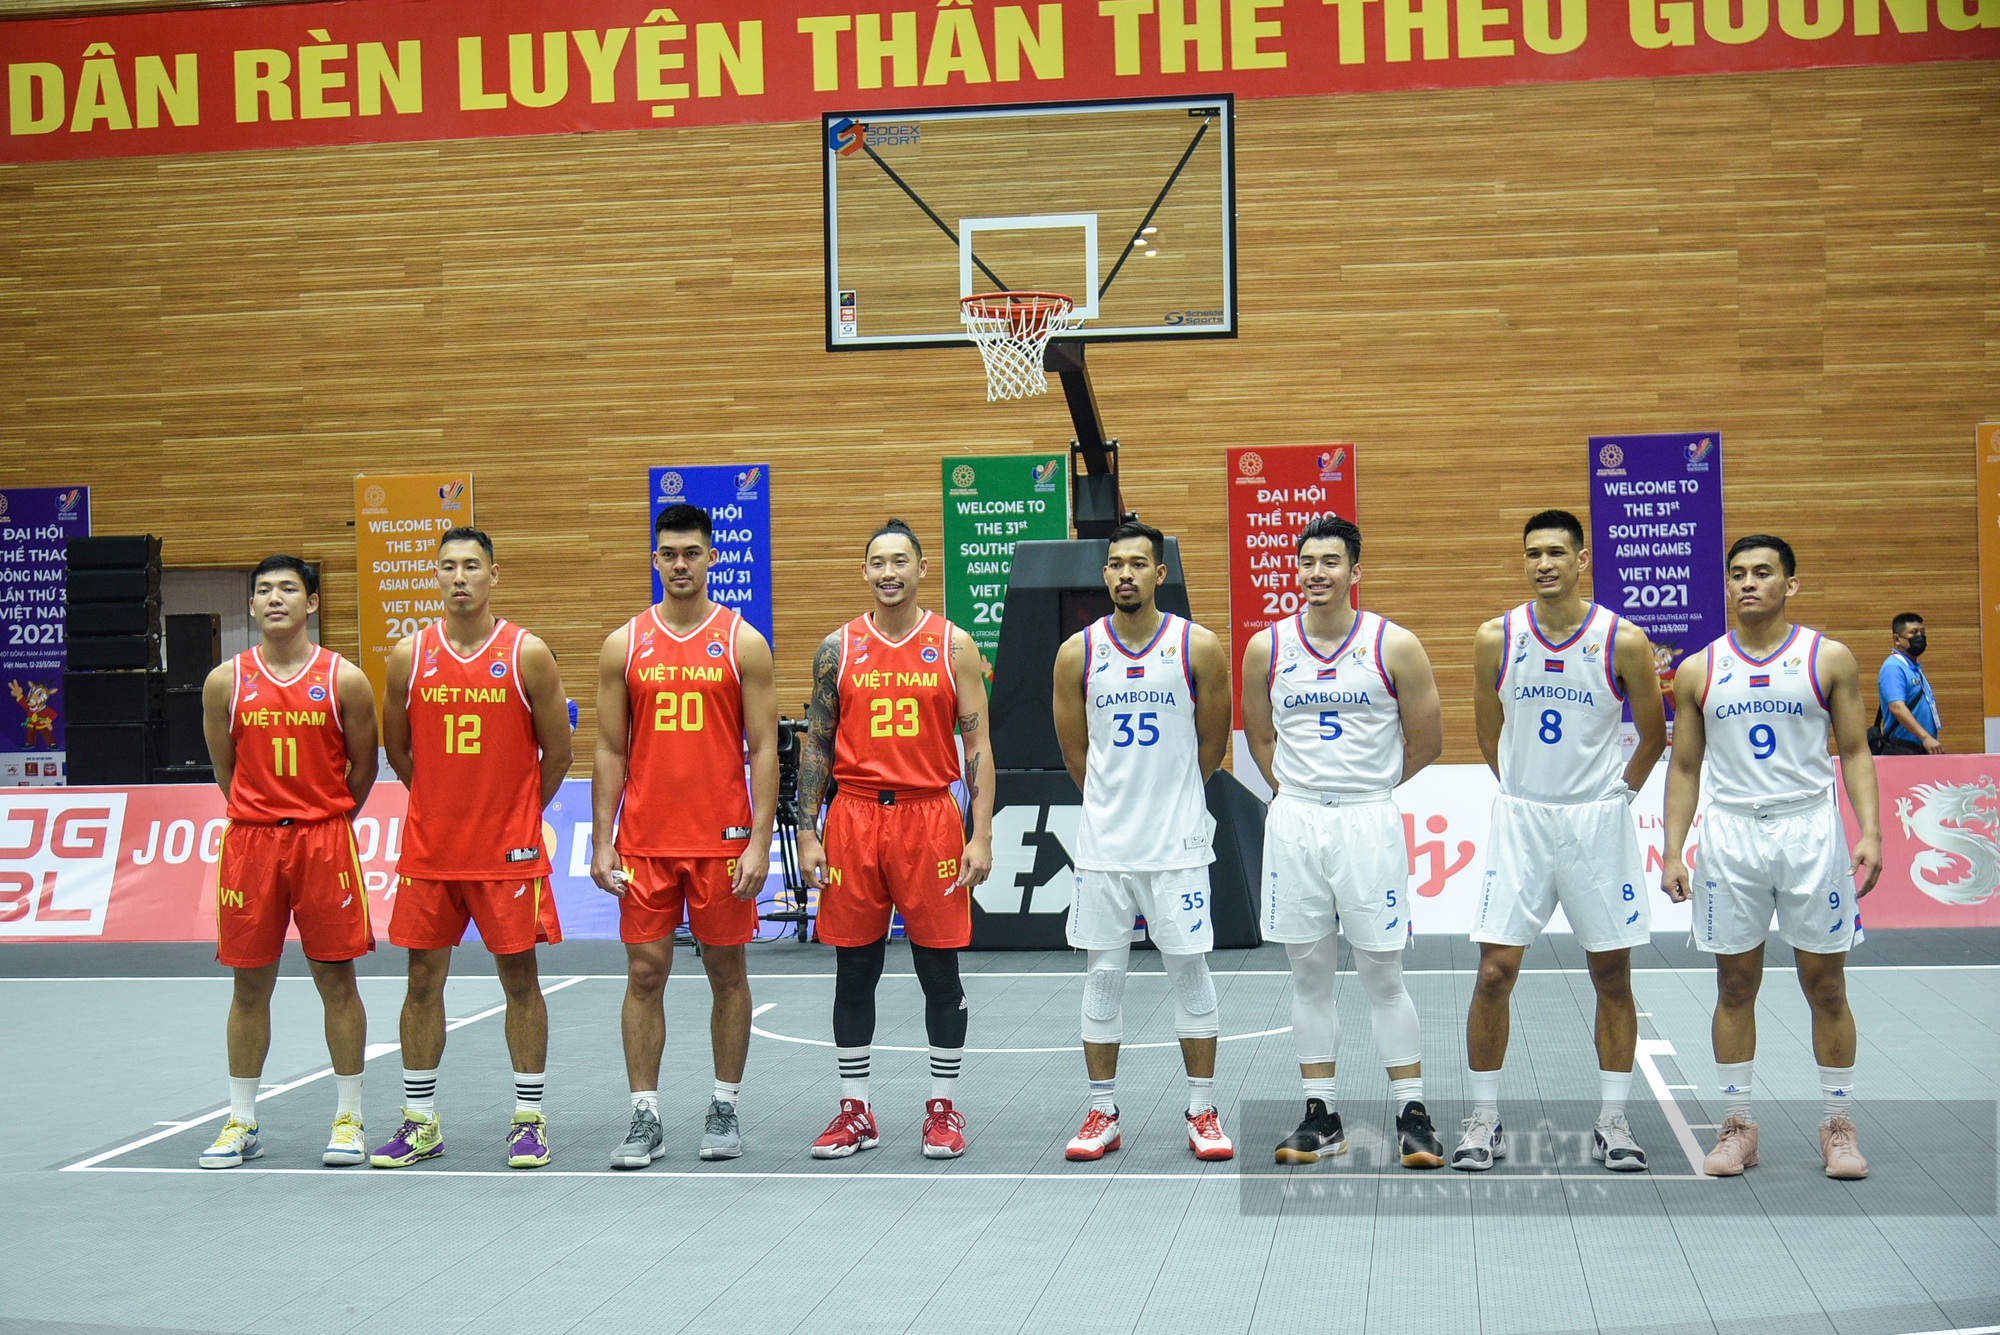 Đội tuyển nam Việt Nam giành chiến thắng trong trận đầu khởi tranh môn bóng rổ - Ảnh 2.